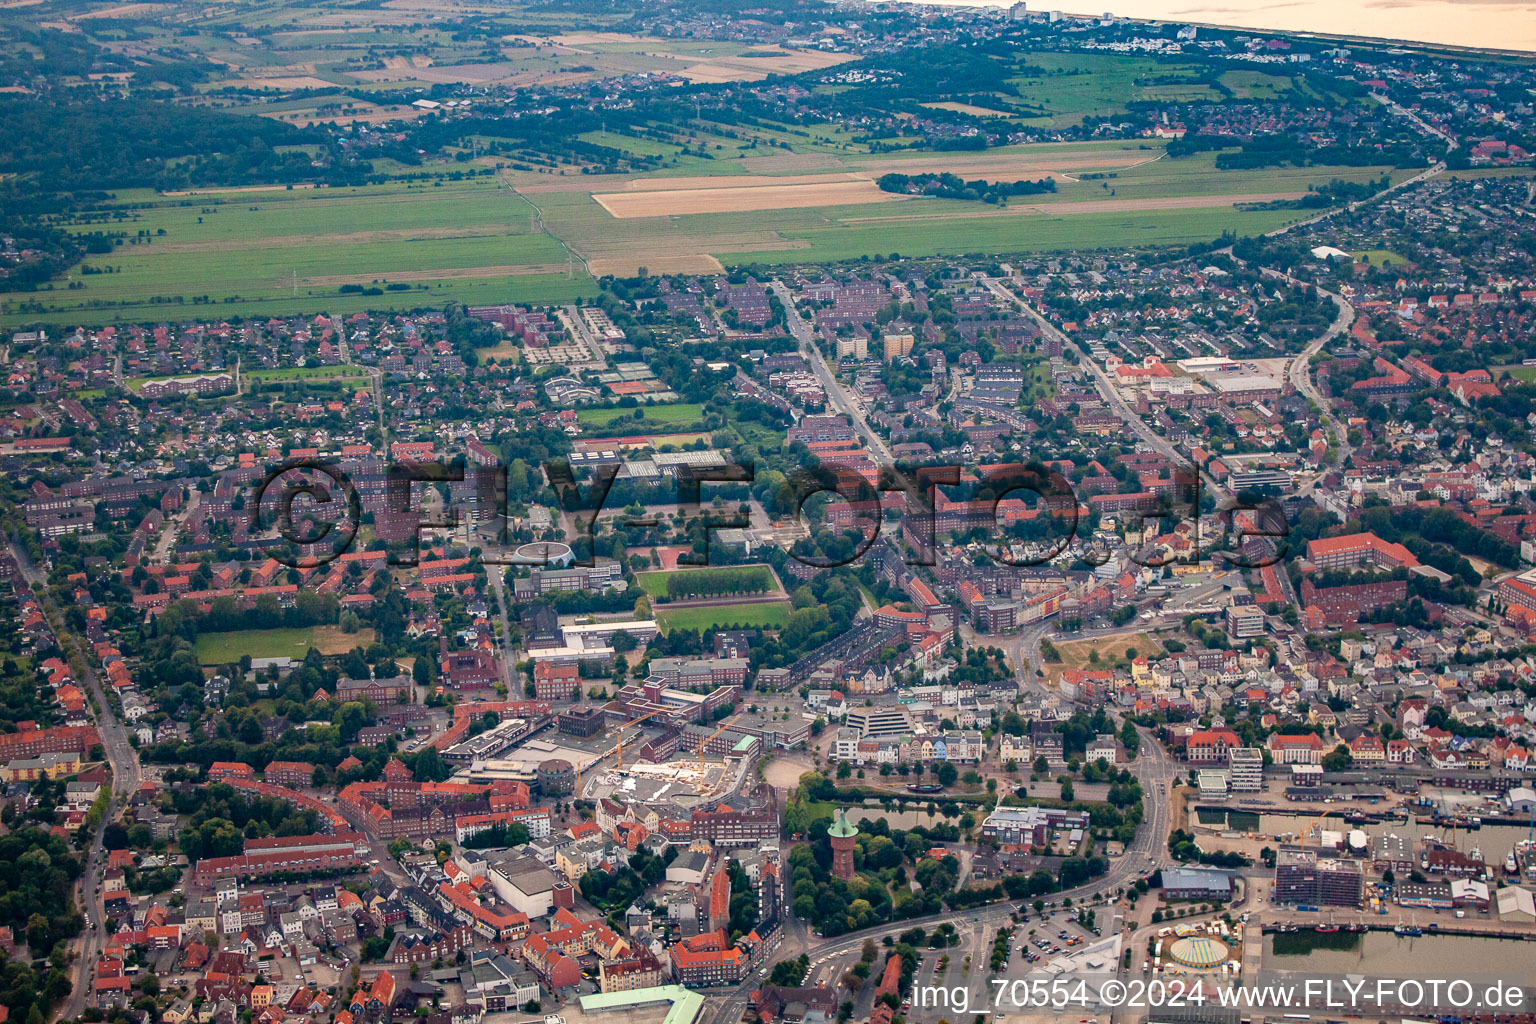 Vue aérienne de De l'est à Cuxhaven dans le département Basse-Saxe, Allemagne